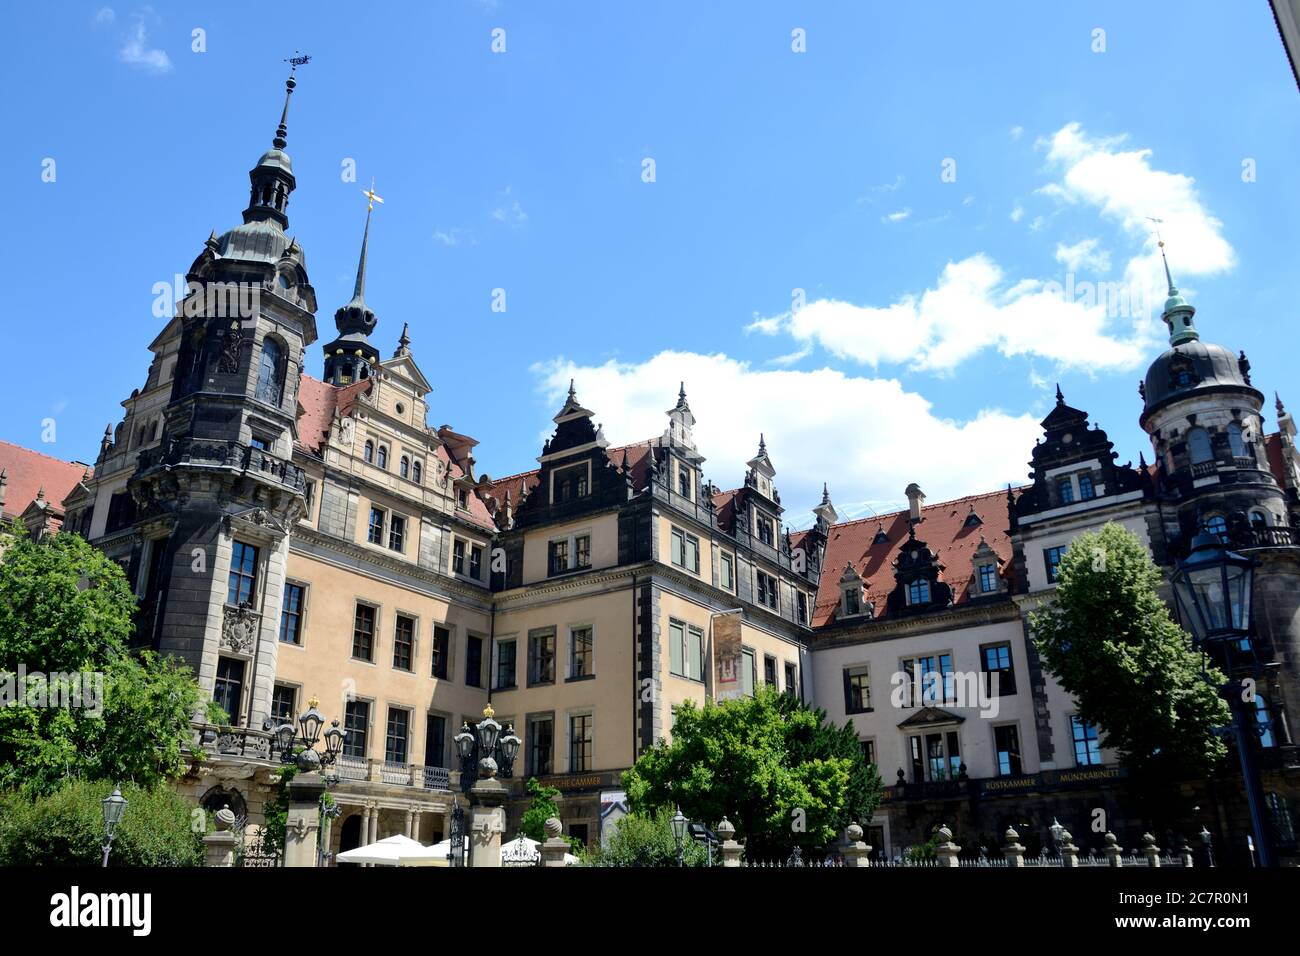 Le château du roi à Dresde, état de Saxe en Allemagne. Ville à l'architecture baroque unique. Banque D'Images